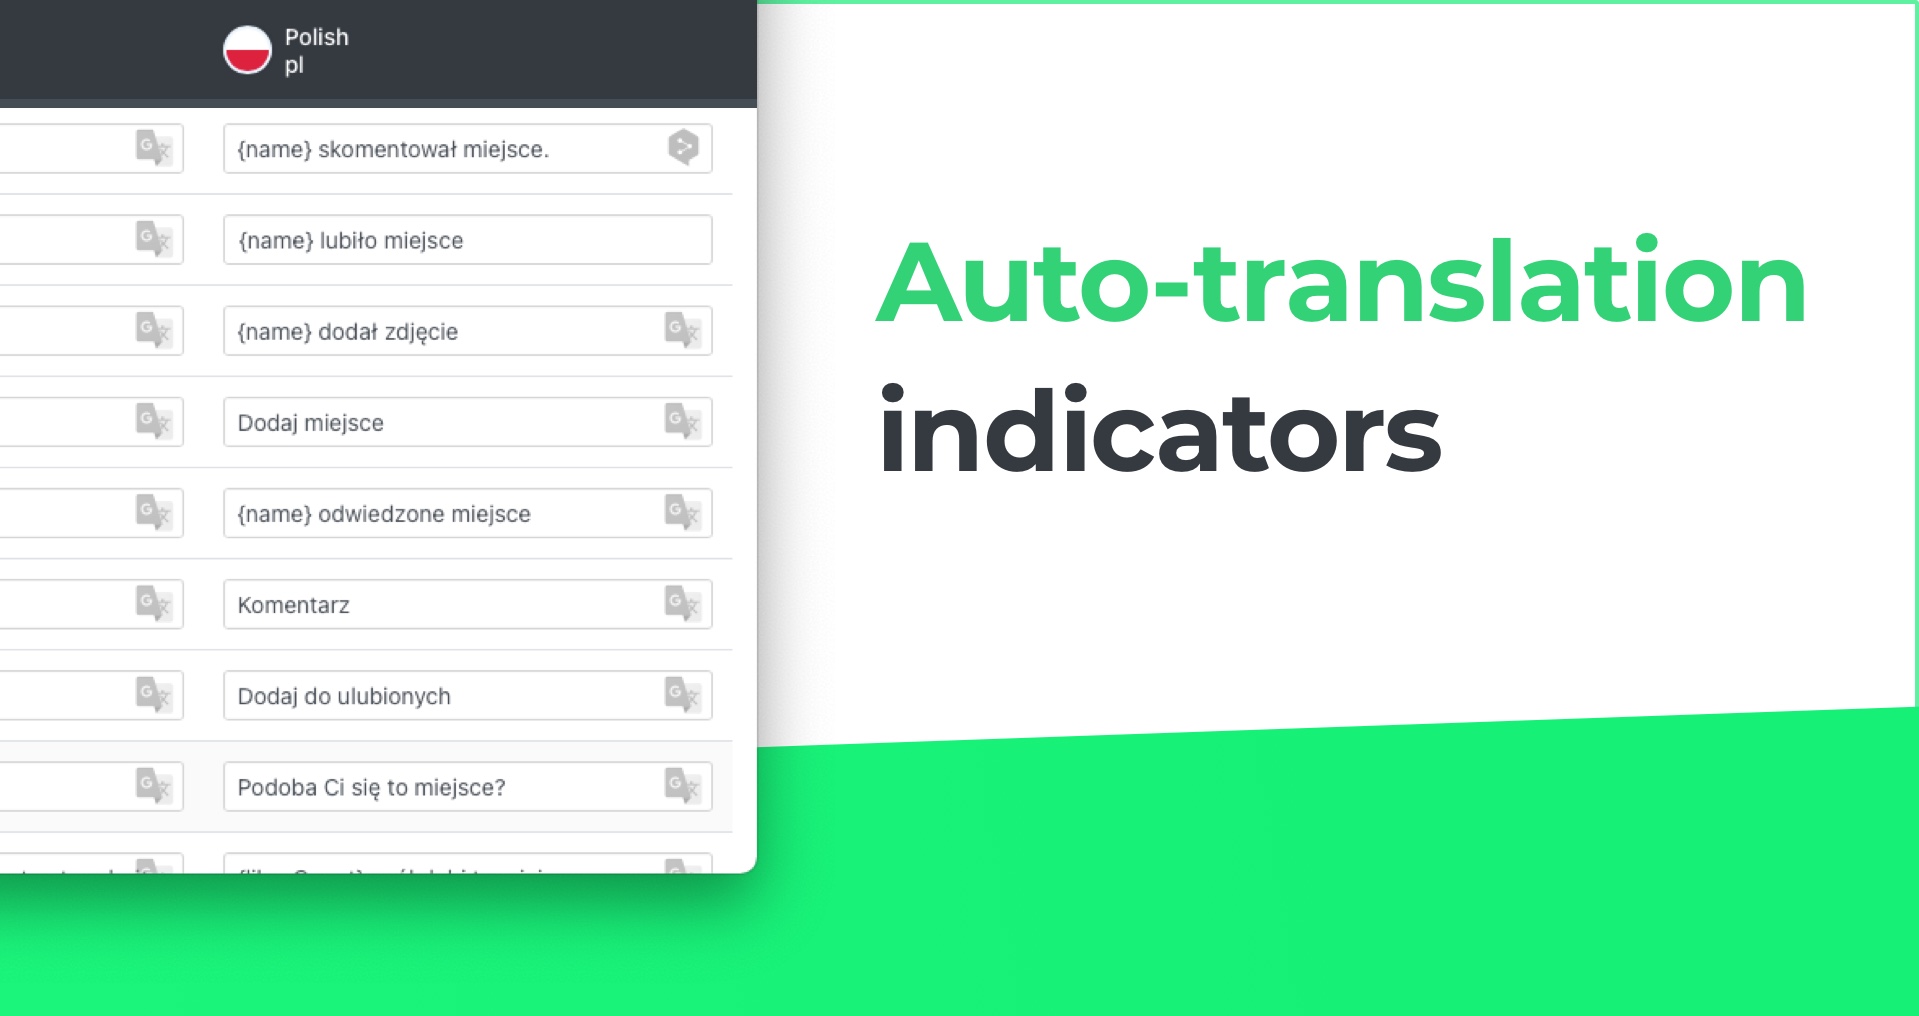 Auto-translation indicator in translation manager